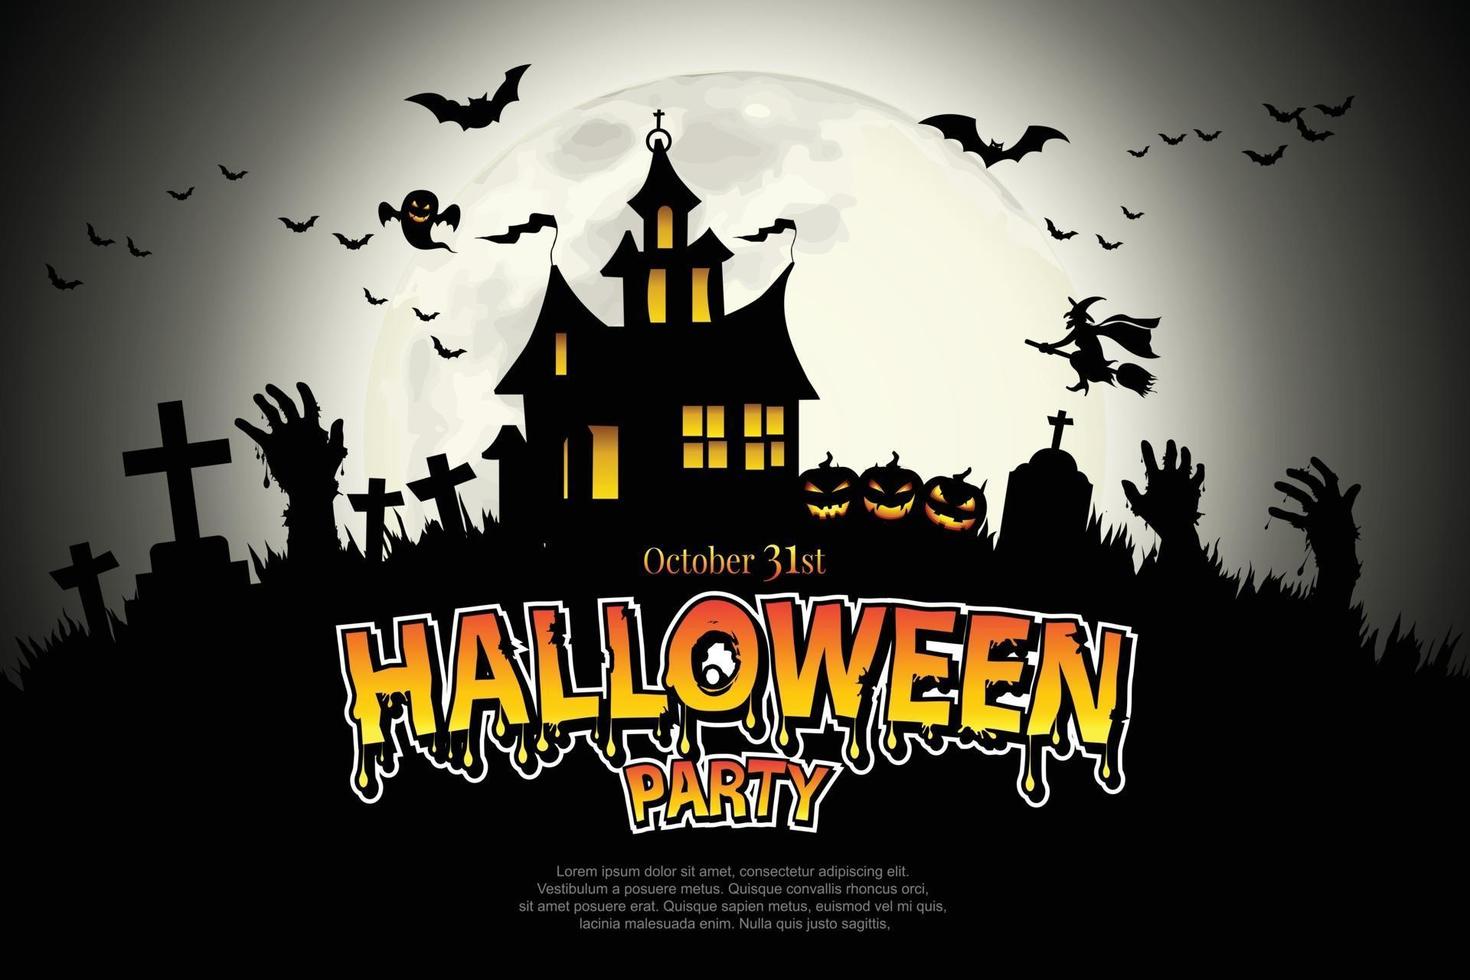 letras de halloween fiesta de halloween. Illustrator vector eps 10